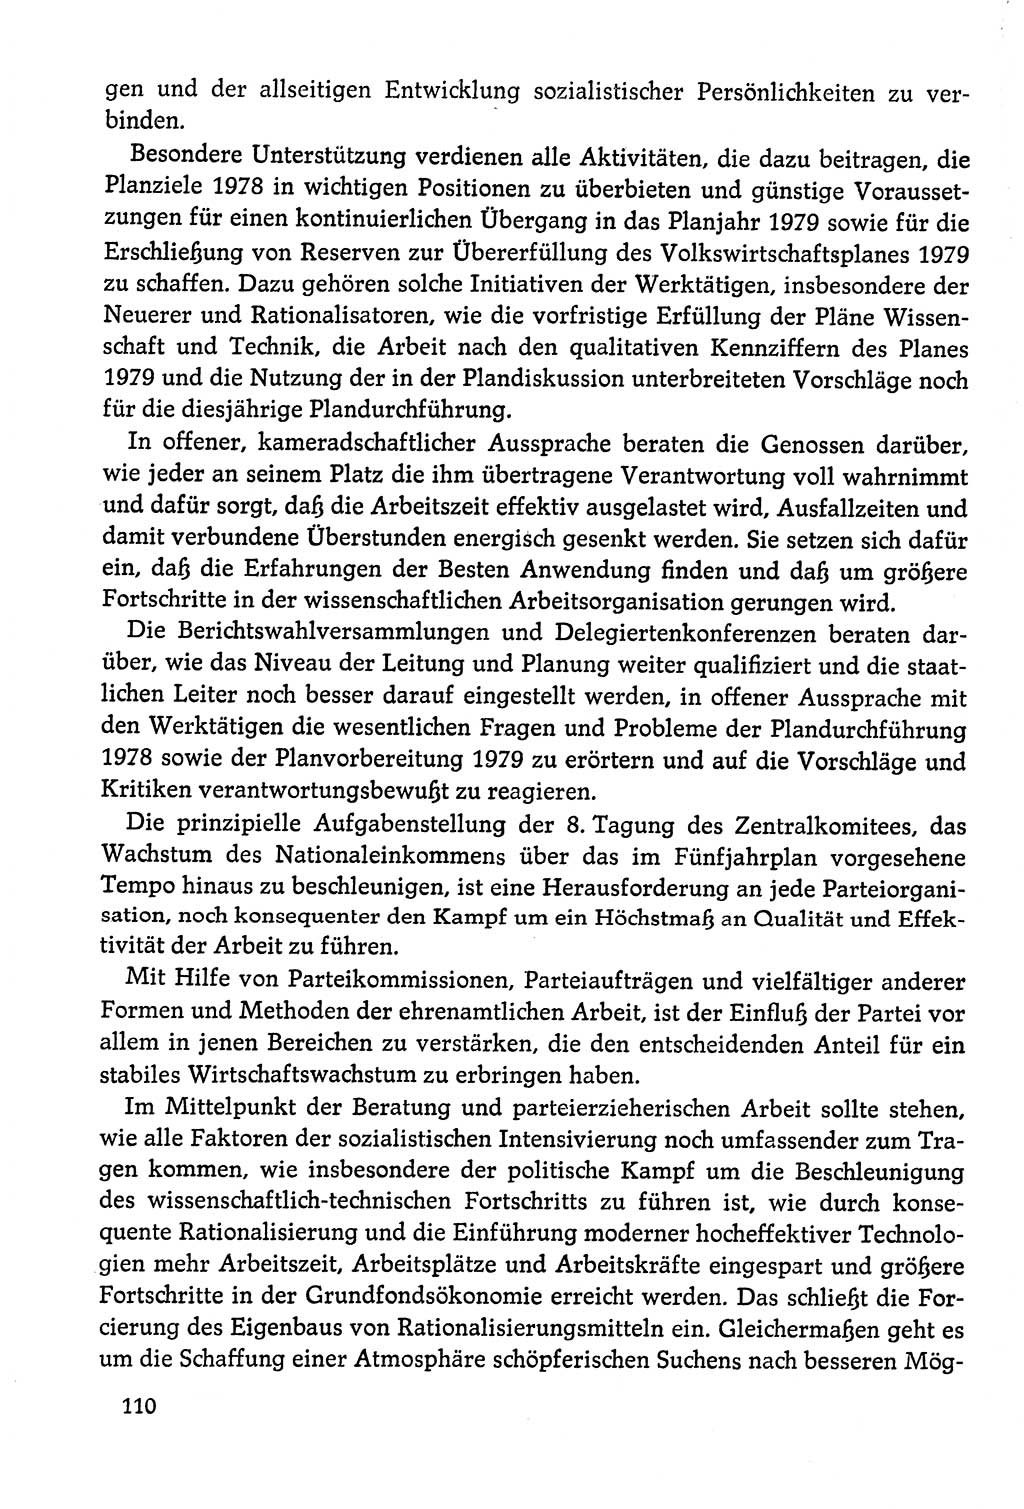 Dokumente der Sozialistischen Einheitspartei Deutschlands (SED) [Deutsche Demokratische Republik (DDR)] 1978-1979, Seite 110 (Dok. SED DDR 1978-1979, S. 110)